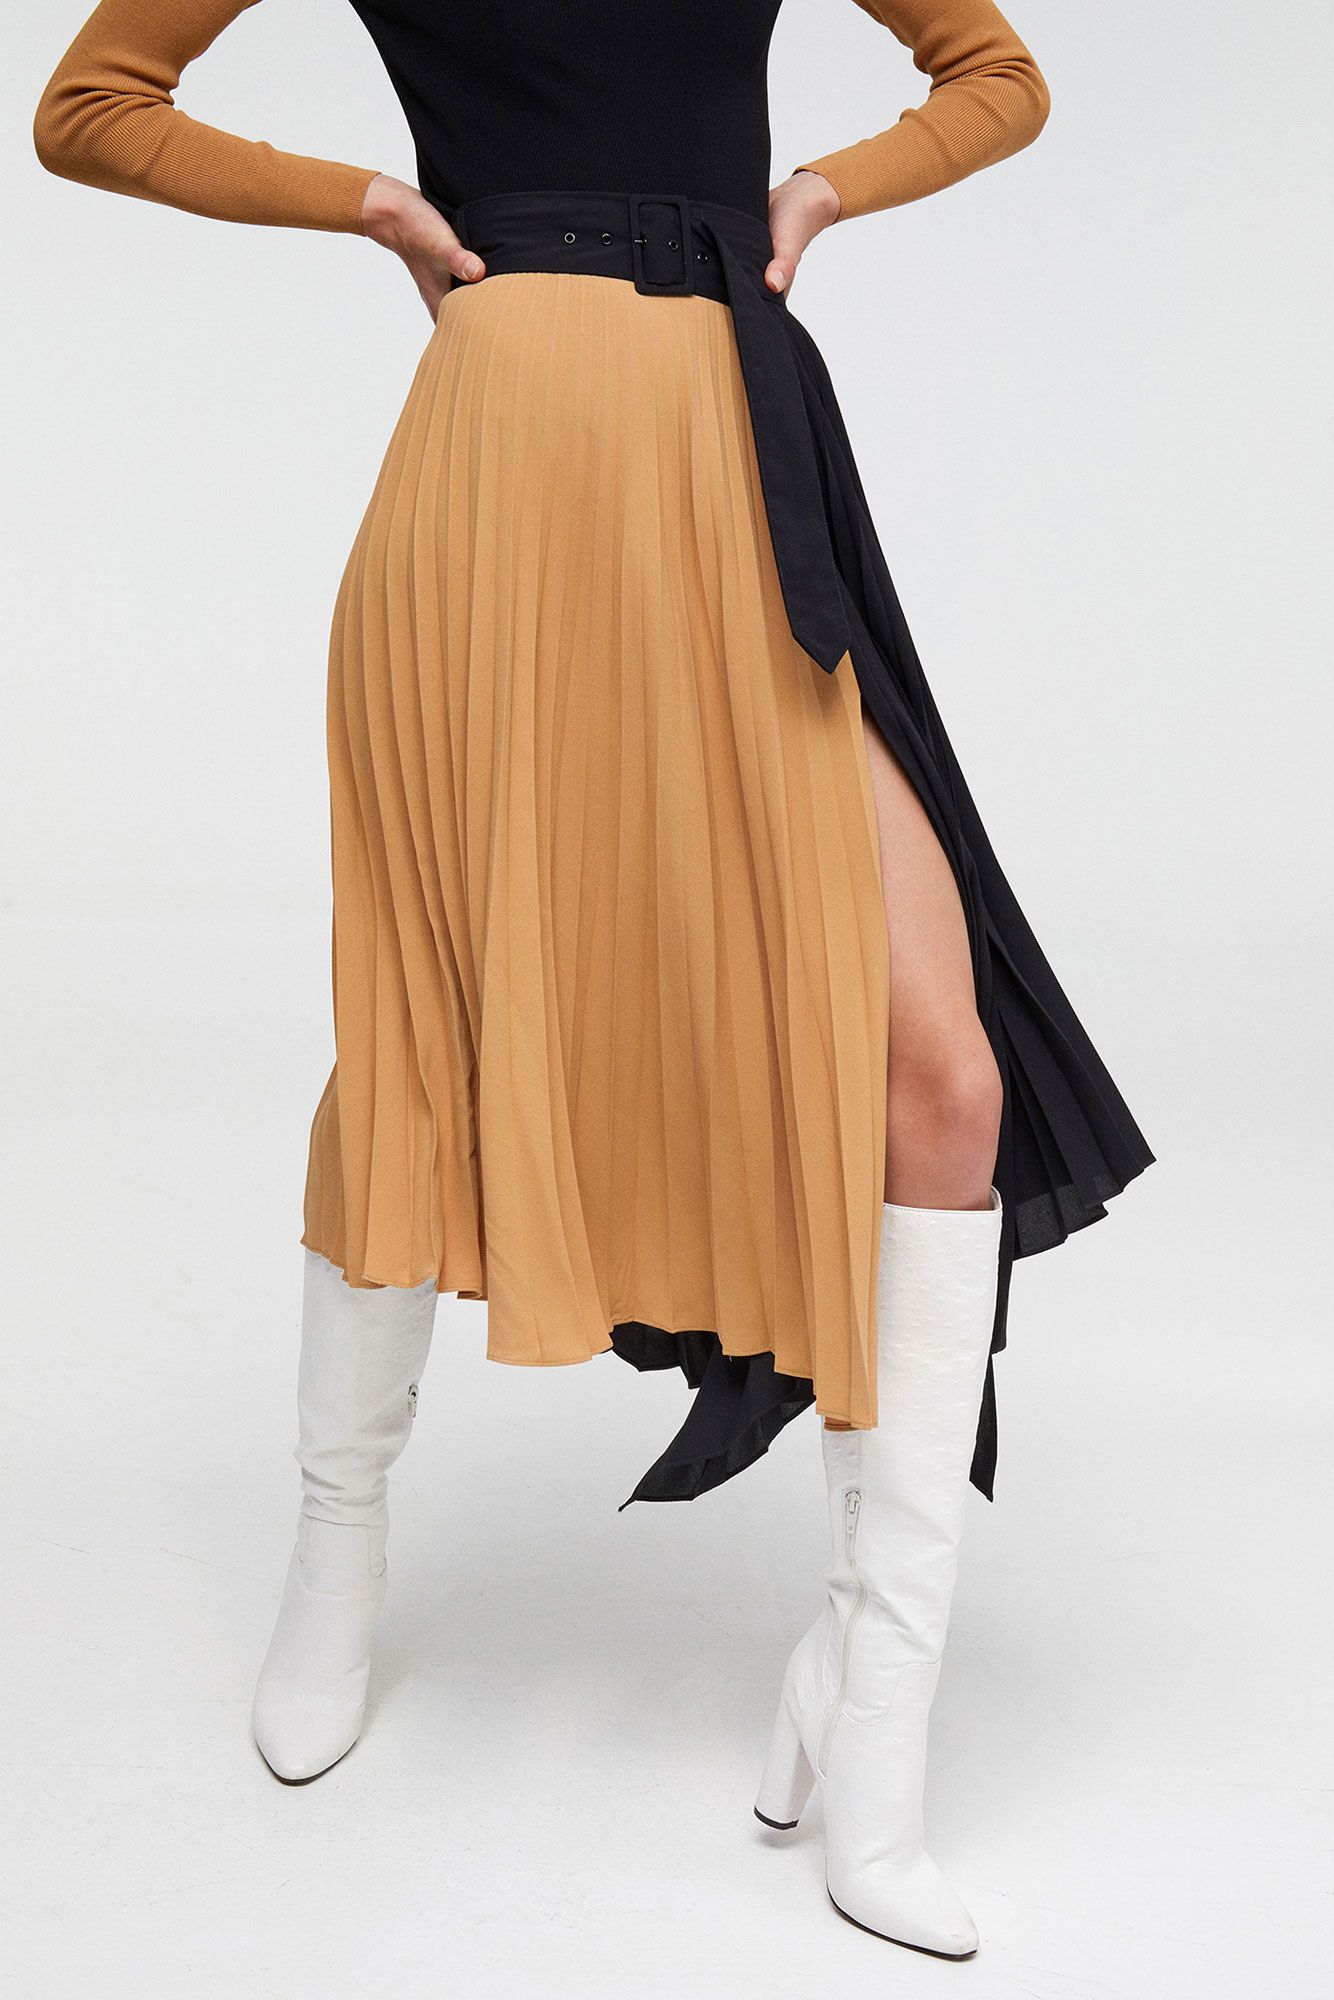 La falda midi plisada de Sfera que llevarán estilosas